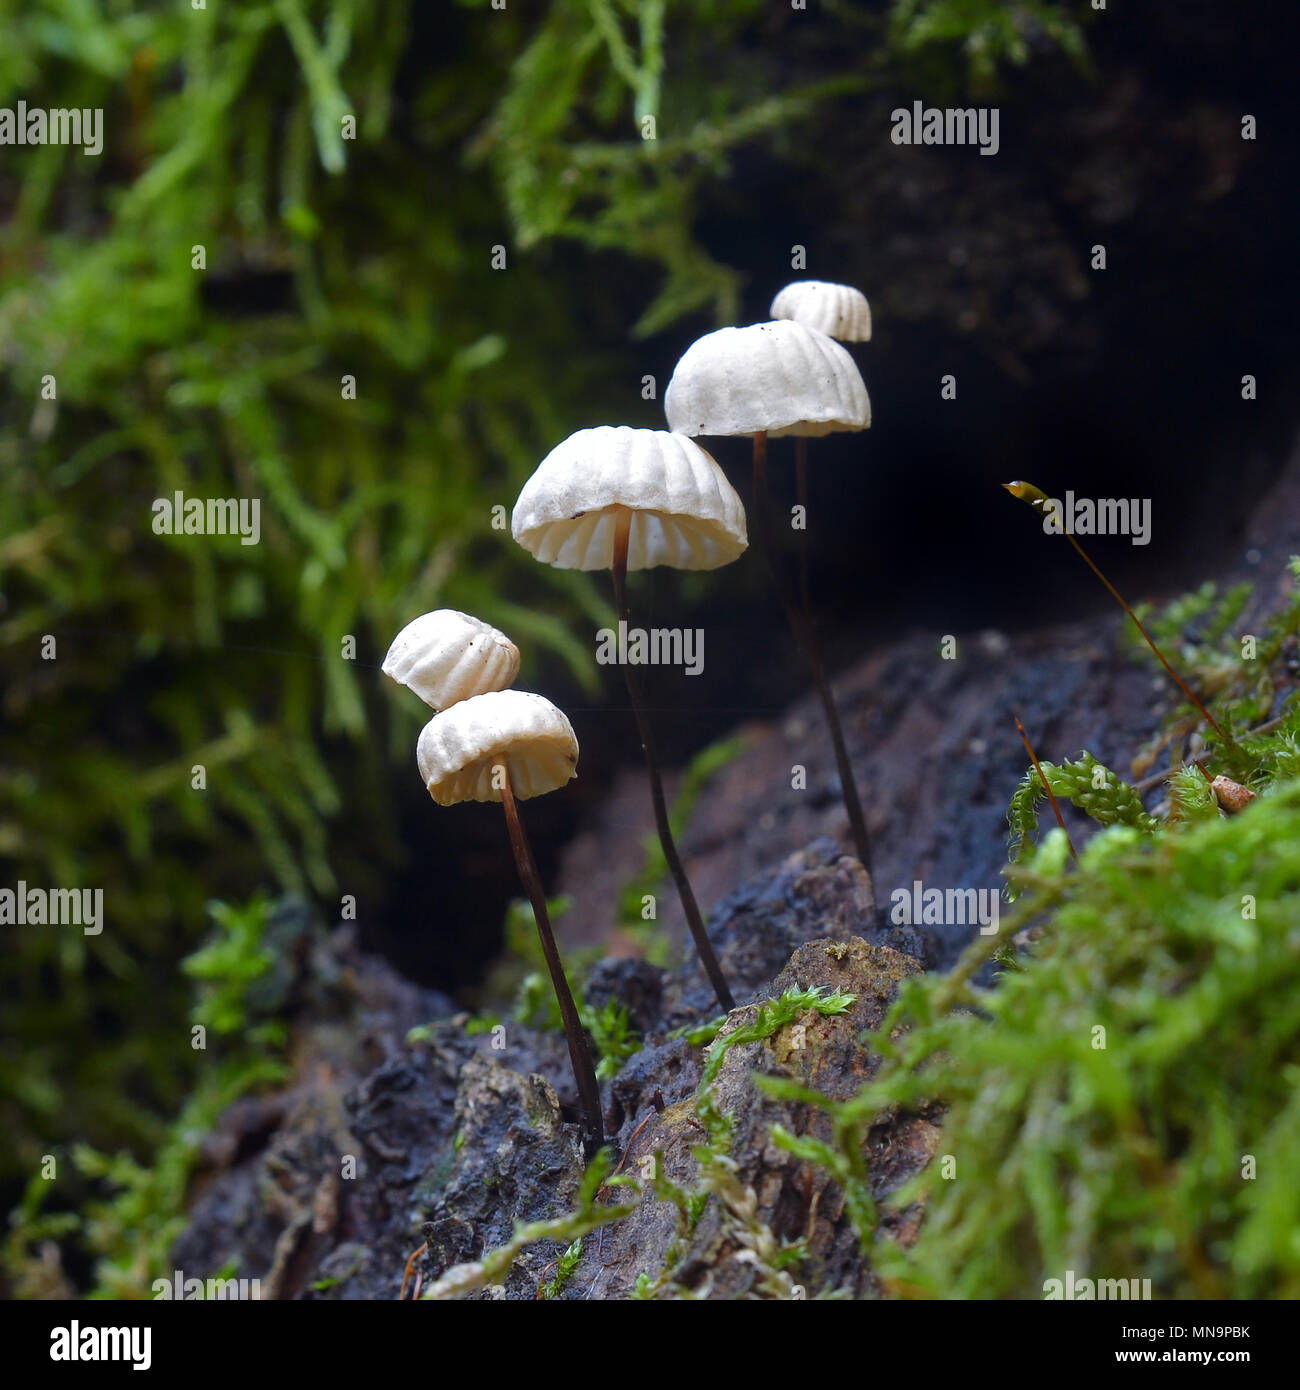 marasmius rotula mushroom, also known as pinwheel mushroom Stock Photo